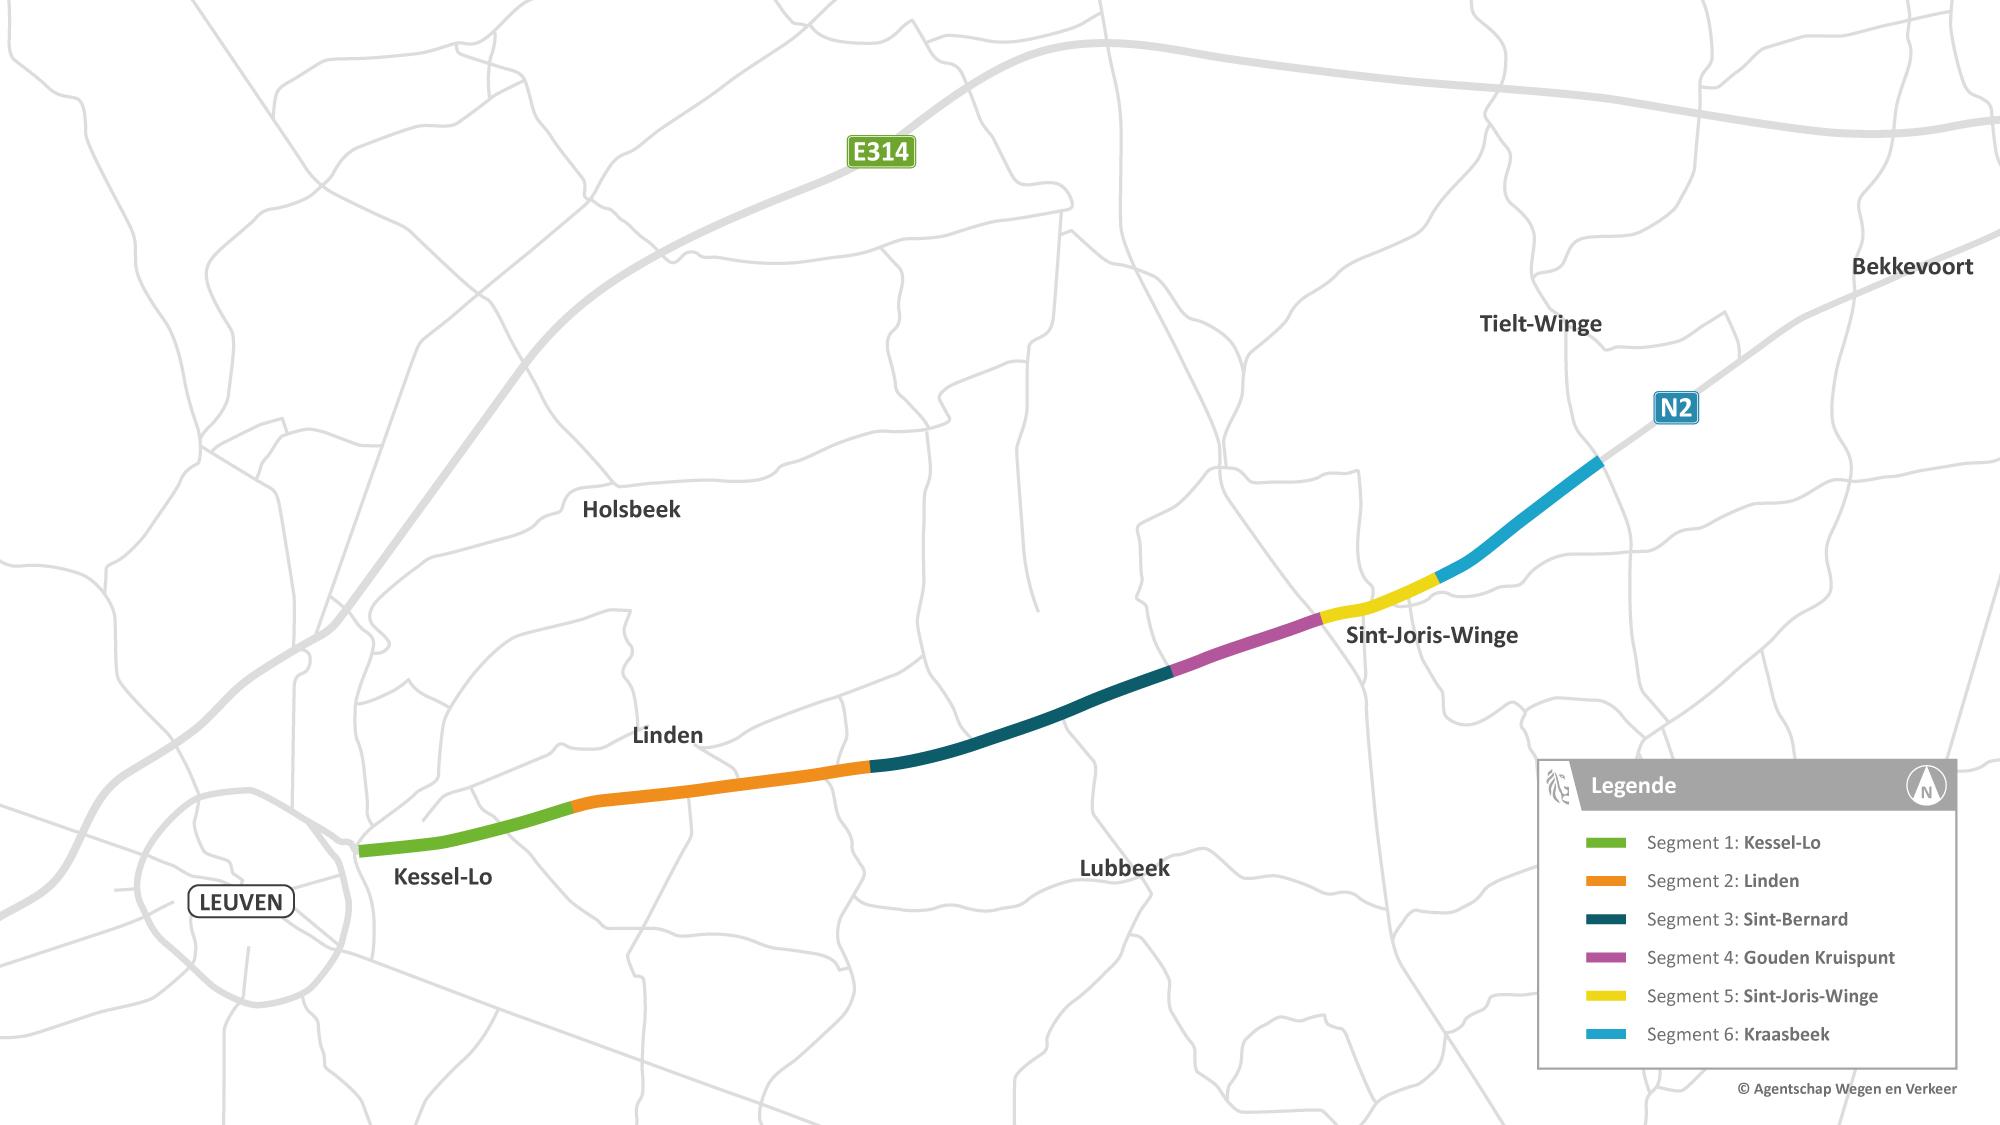 Herinrichting N2 tussen Leuven en Tielt-Winge: 6 segmenten